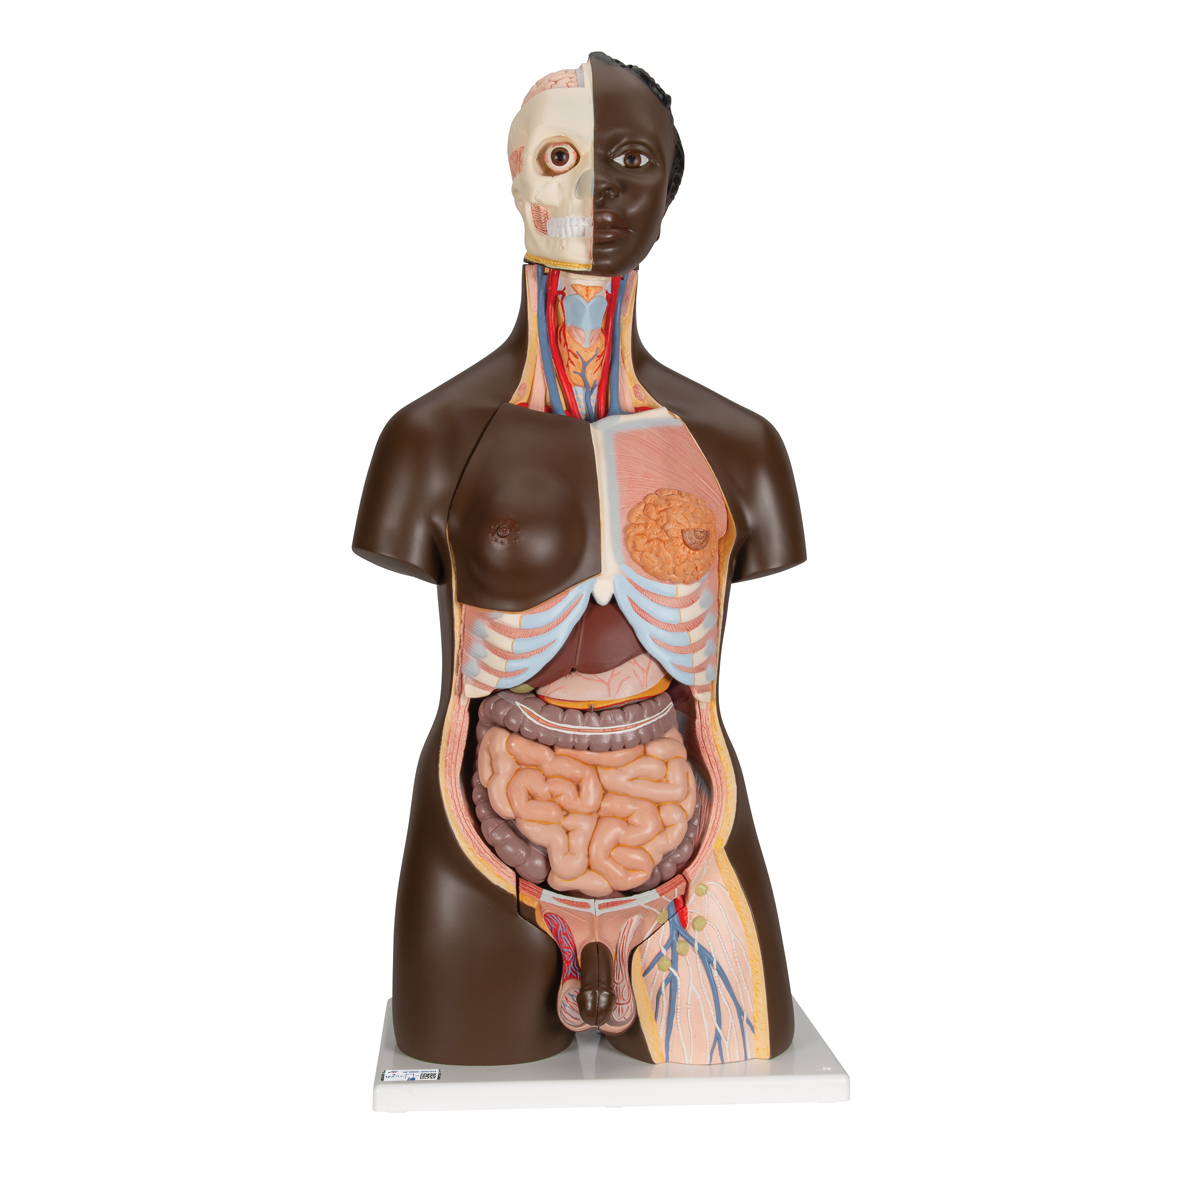 Torso Model, mit weiblichen & männlichen Geschlechtsorganen, 24-teilig - dunkle Hautfarbe - 3B Smart Anatomy, Bestellnummer 1000202, B37, 3B Scientific